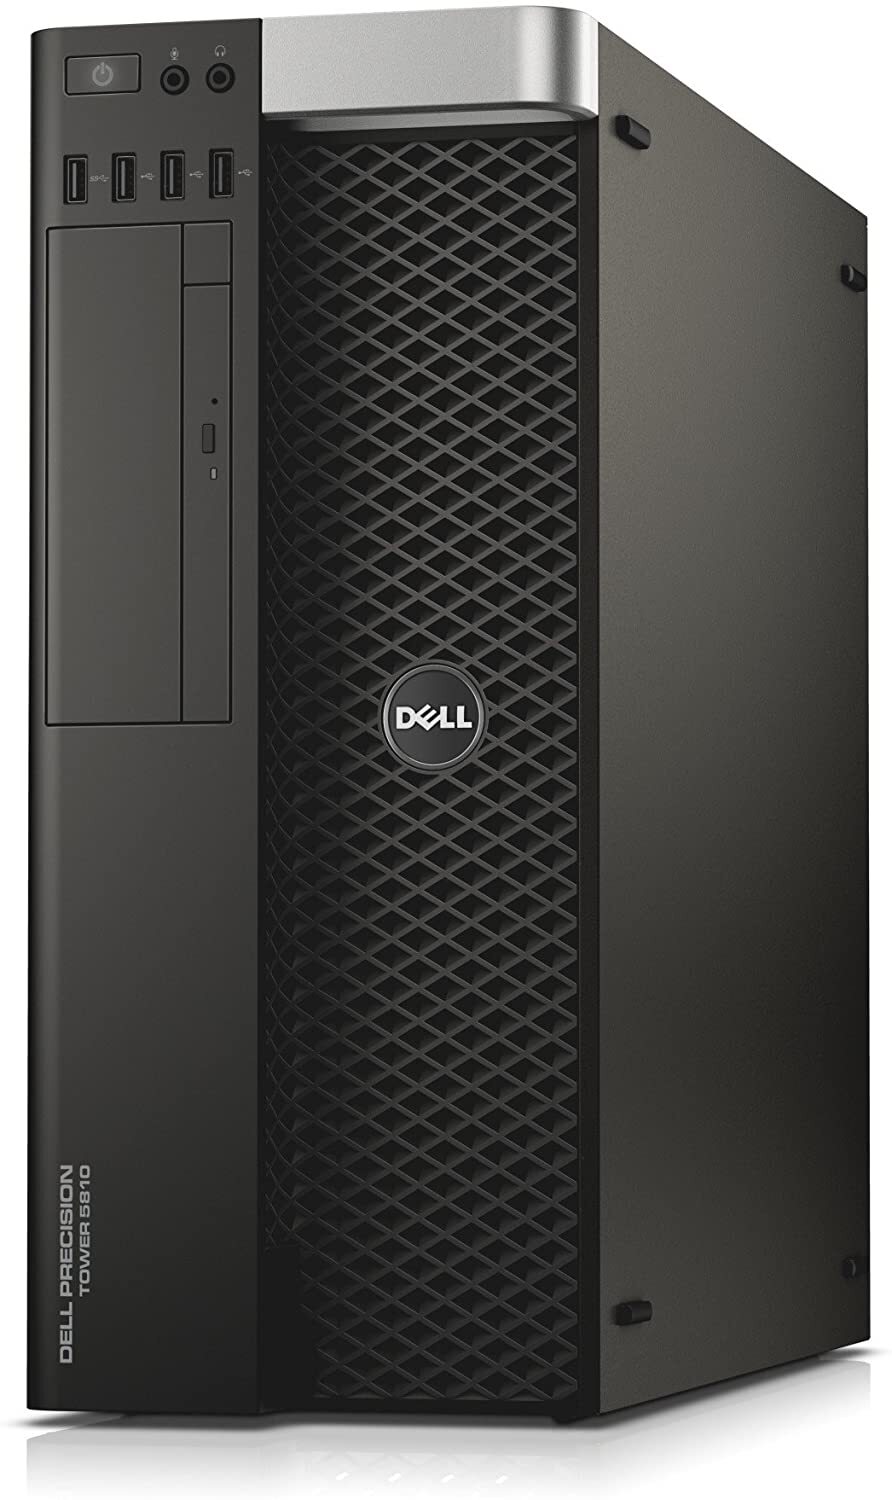 Dell Precision Tower 5810 Intel Xeon E5-1607 3.10GHz 16GB RAM 500GB HDD Win 10